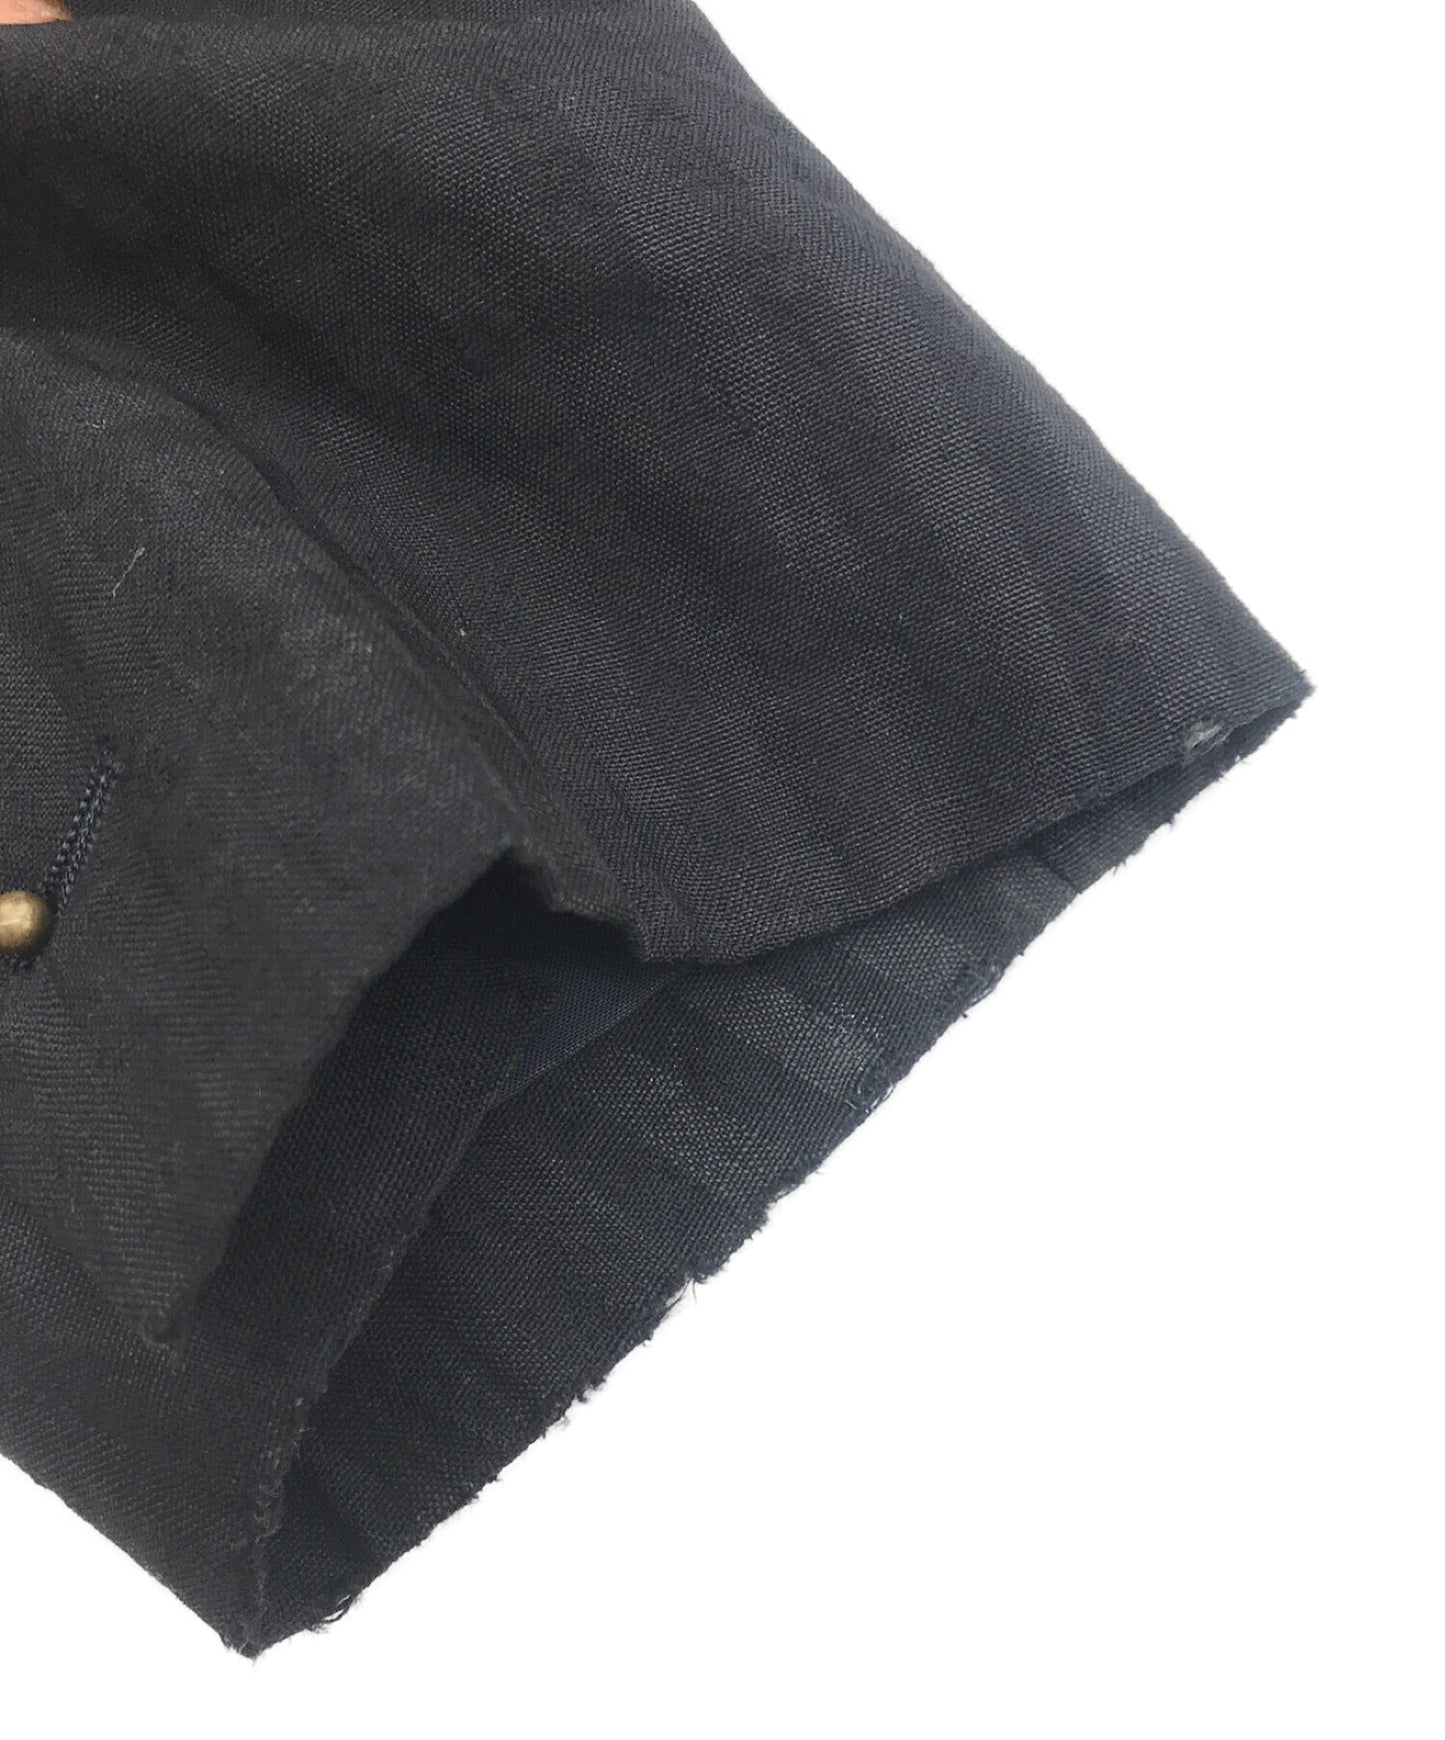 [Pre-owned] COMME des GARCONS HOMME Linen-blend 3B jacket HJ-02023S